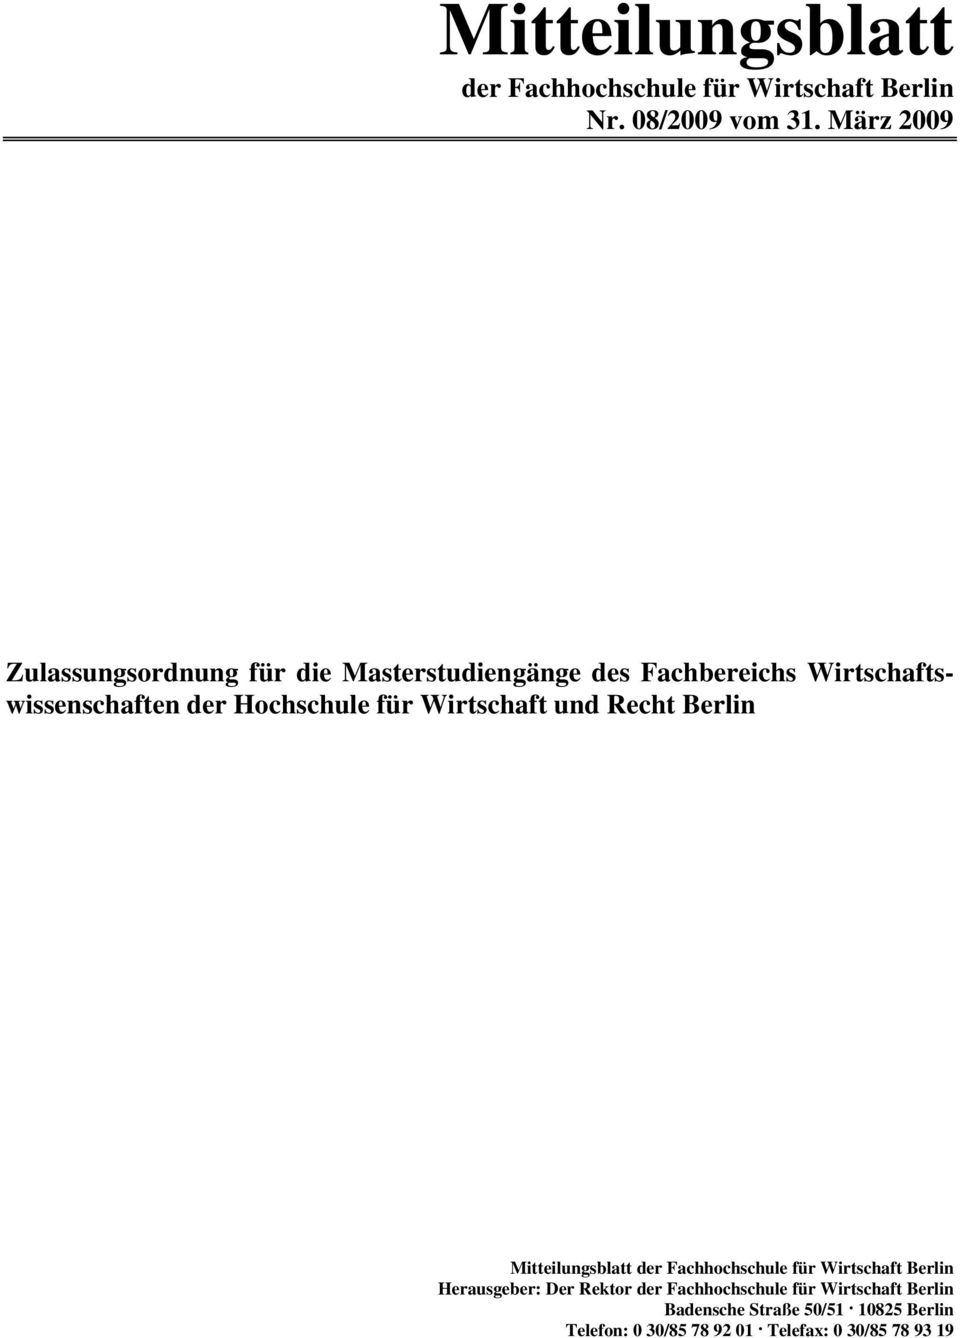 Hochschule für Wirtschaft und Recht Berlin Mitteilungsblatt der Fachhochschule für Wirtschaft Berlin